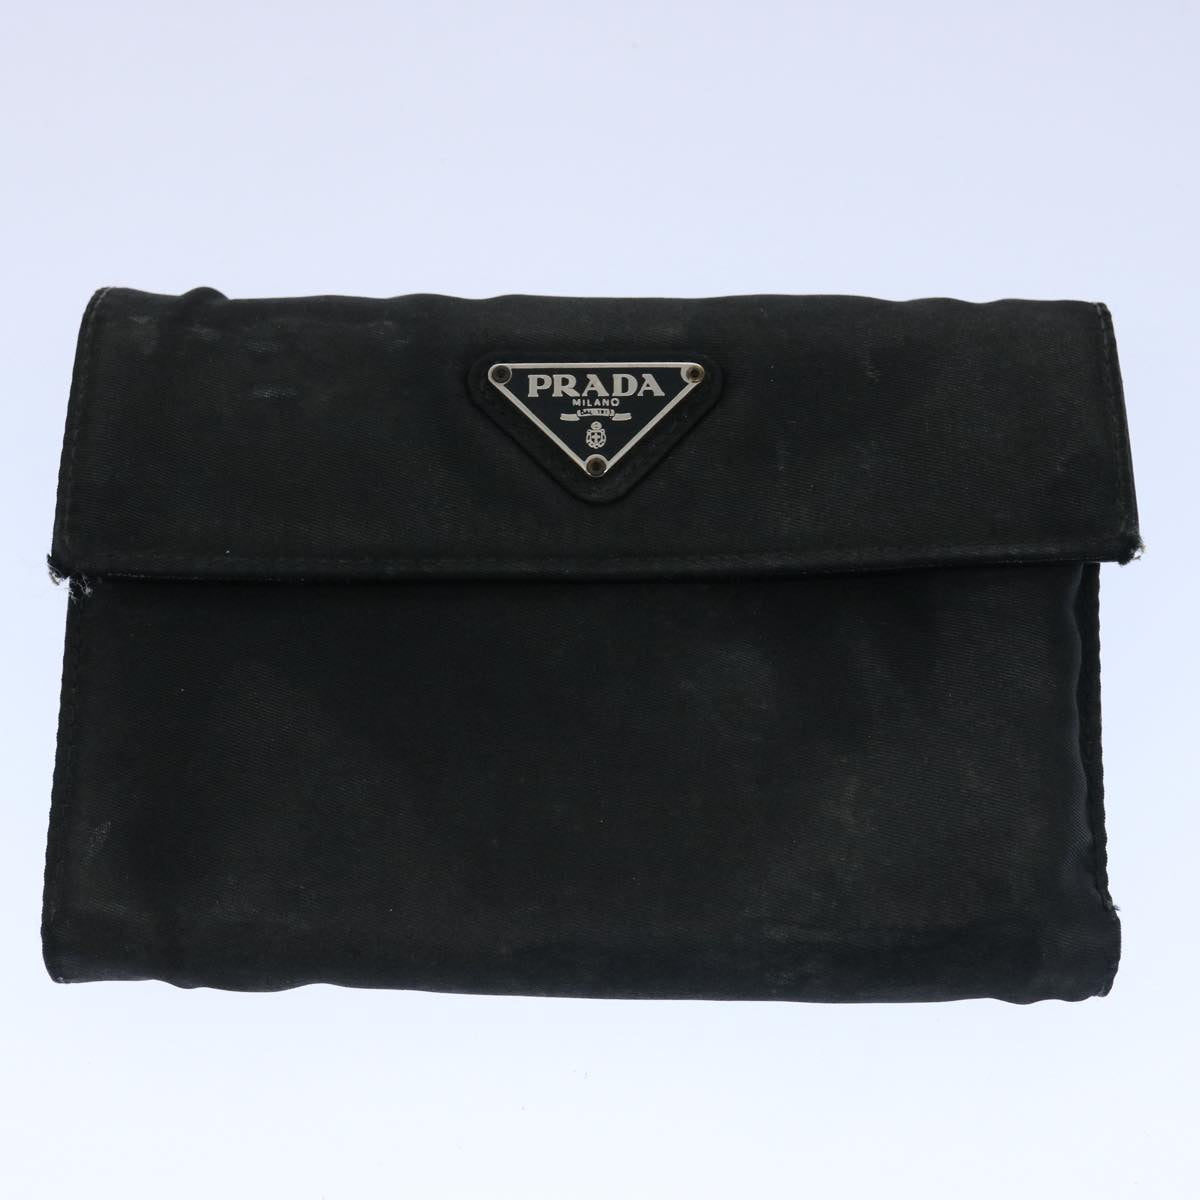 PRADA Wallet Leather Nylon 10set Black Brown Auth ar10912